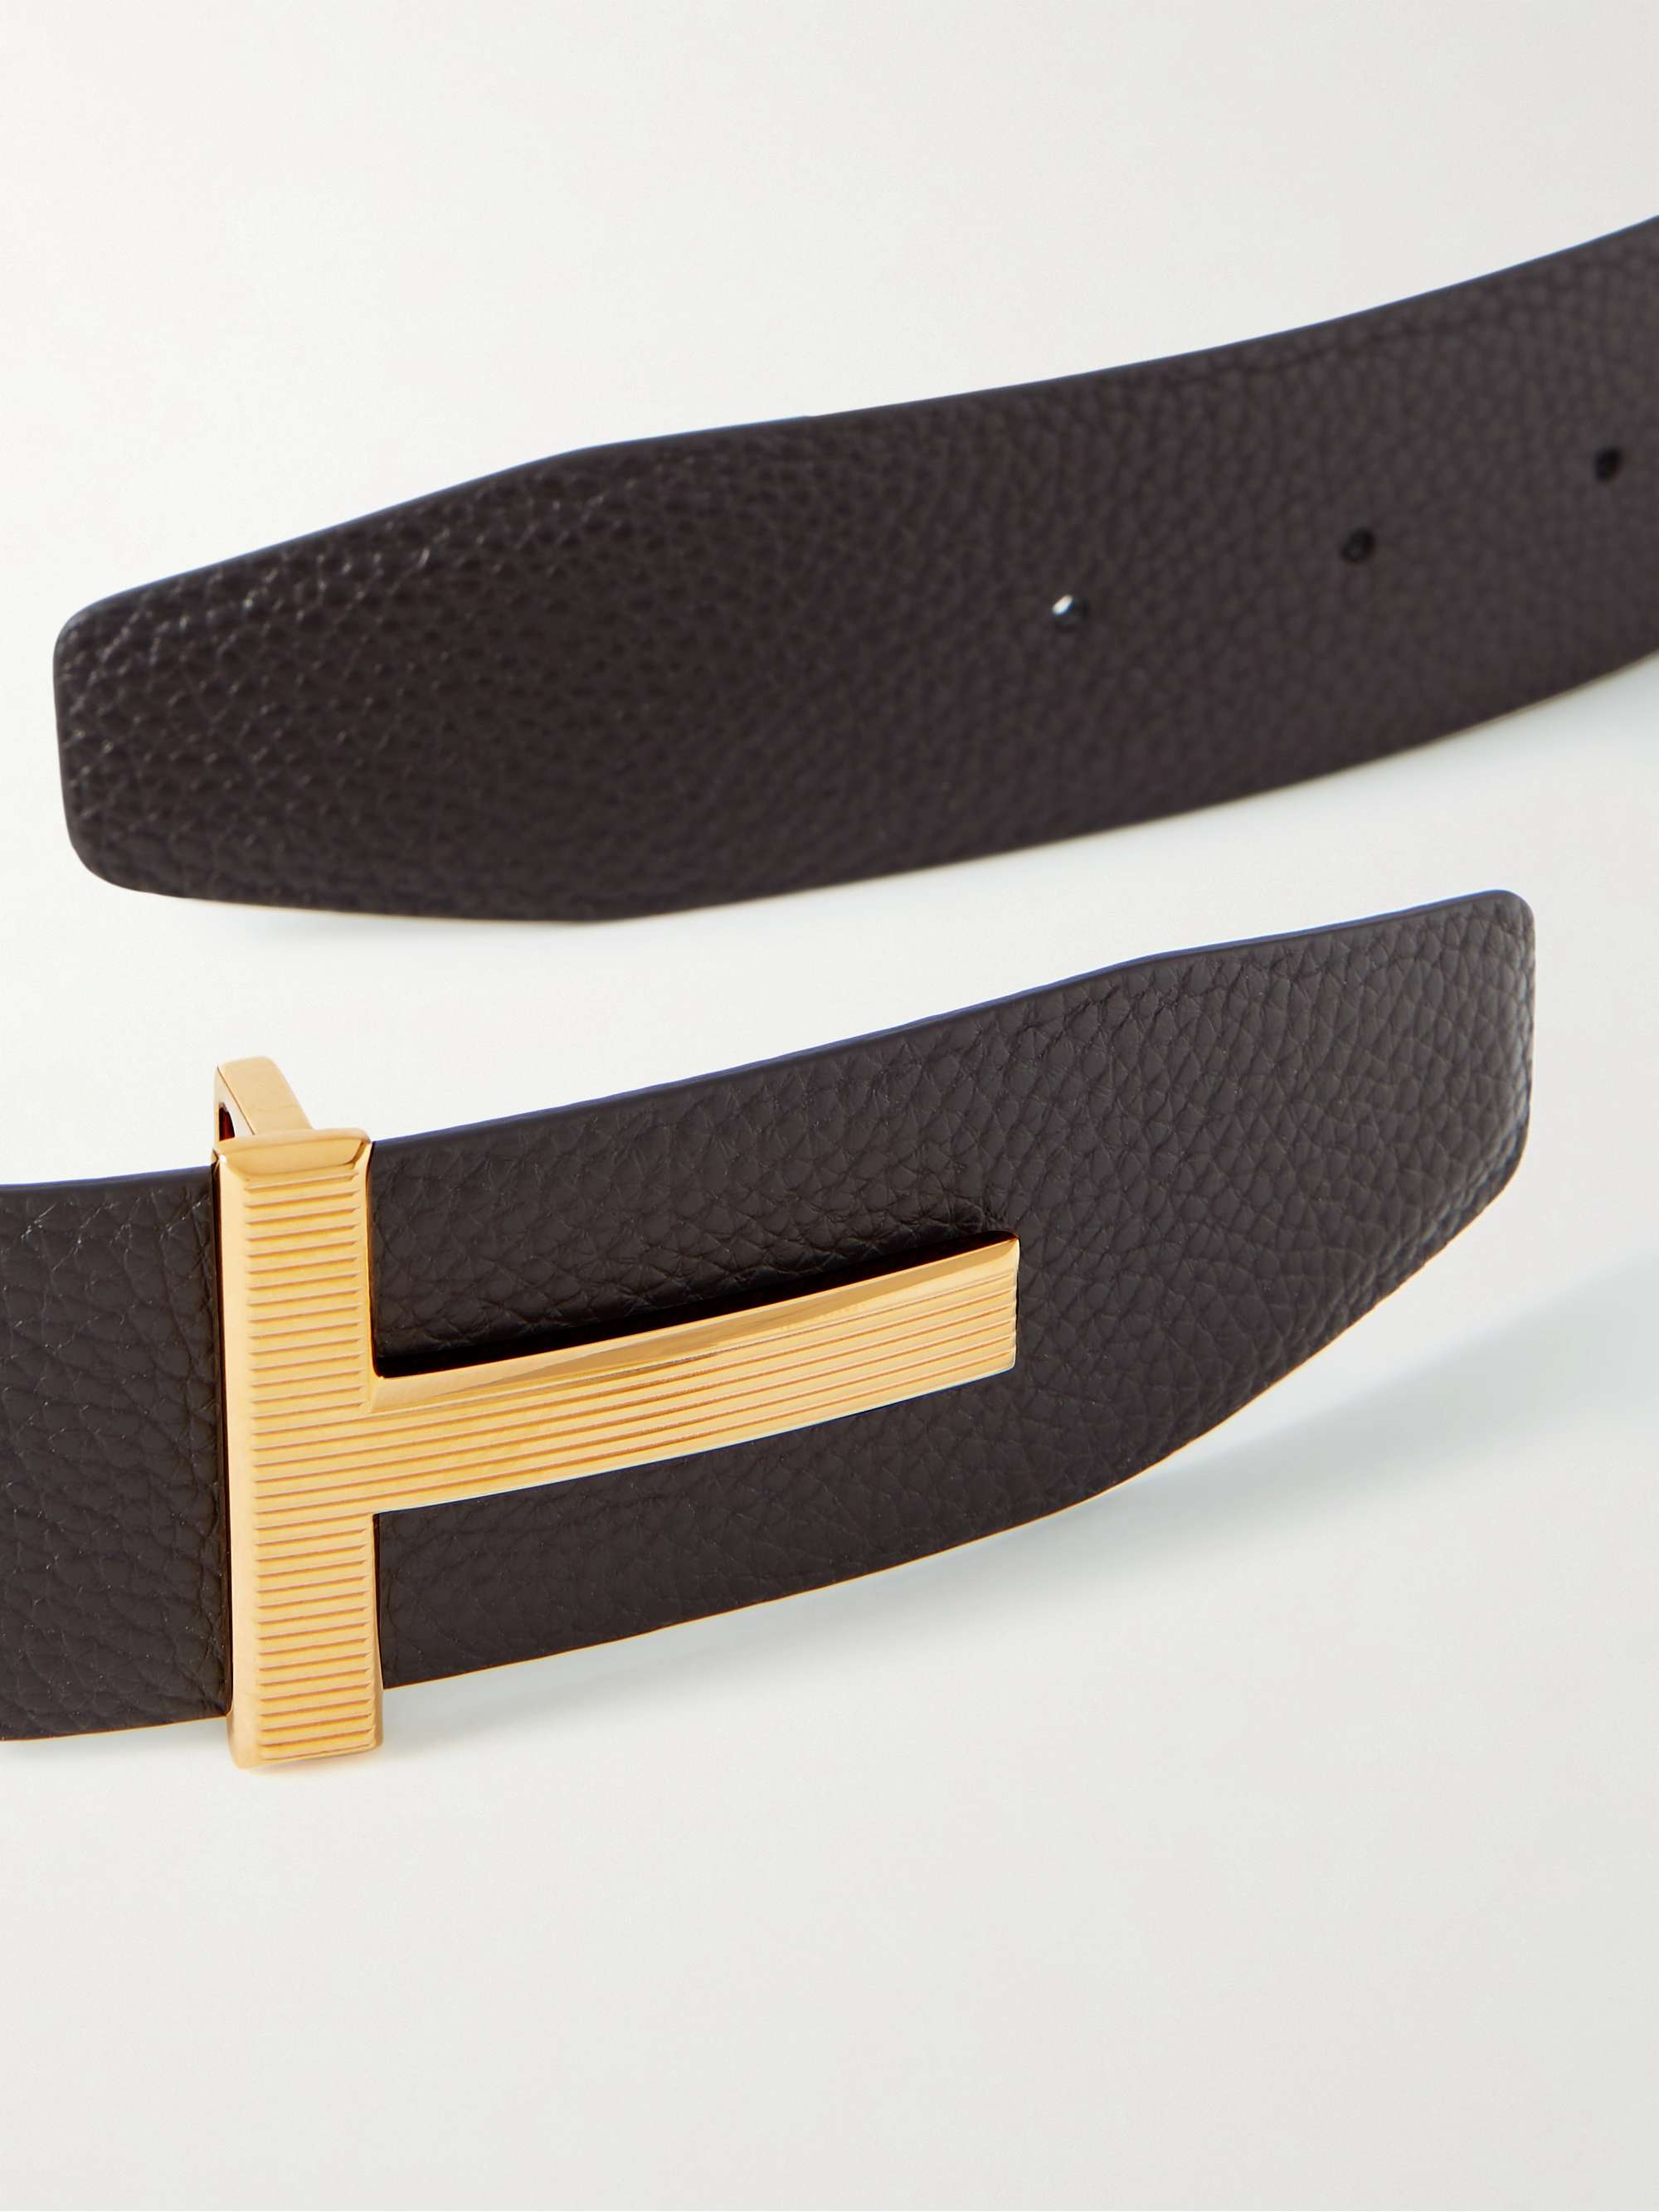 TOM FORD Full-Grain Leather Belt - Men - Brown Belts